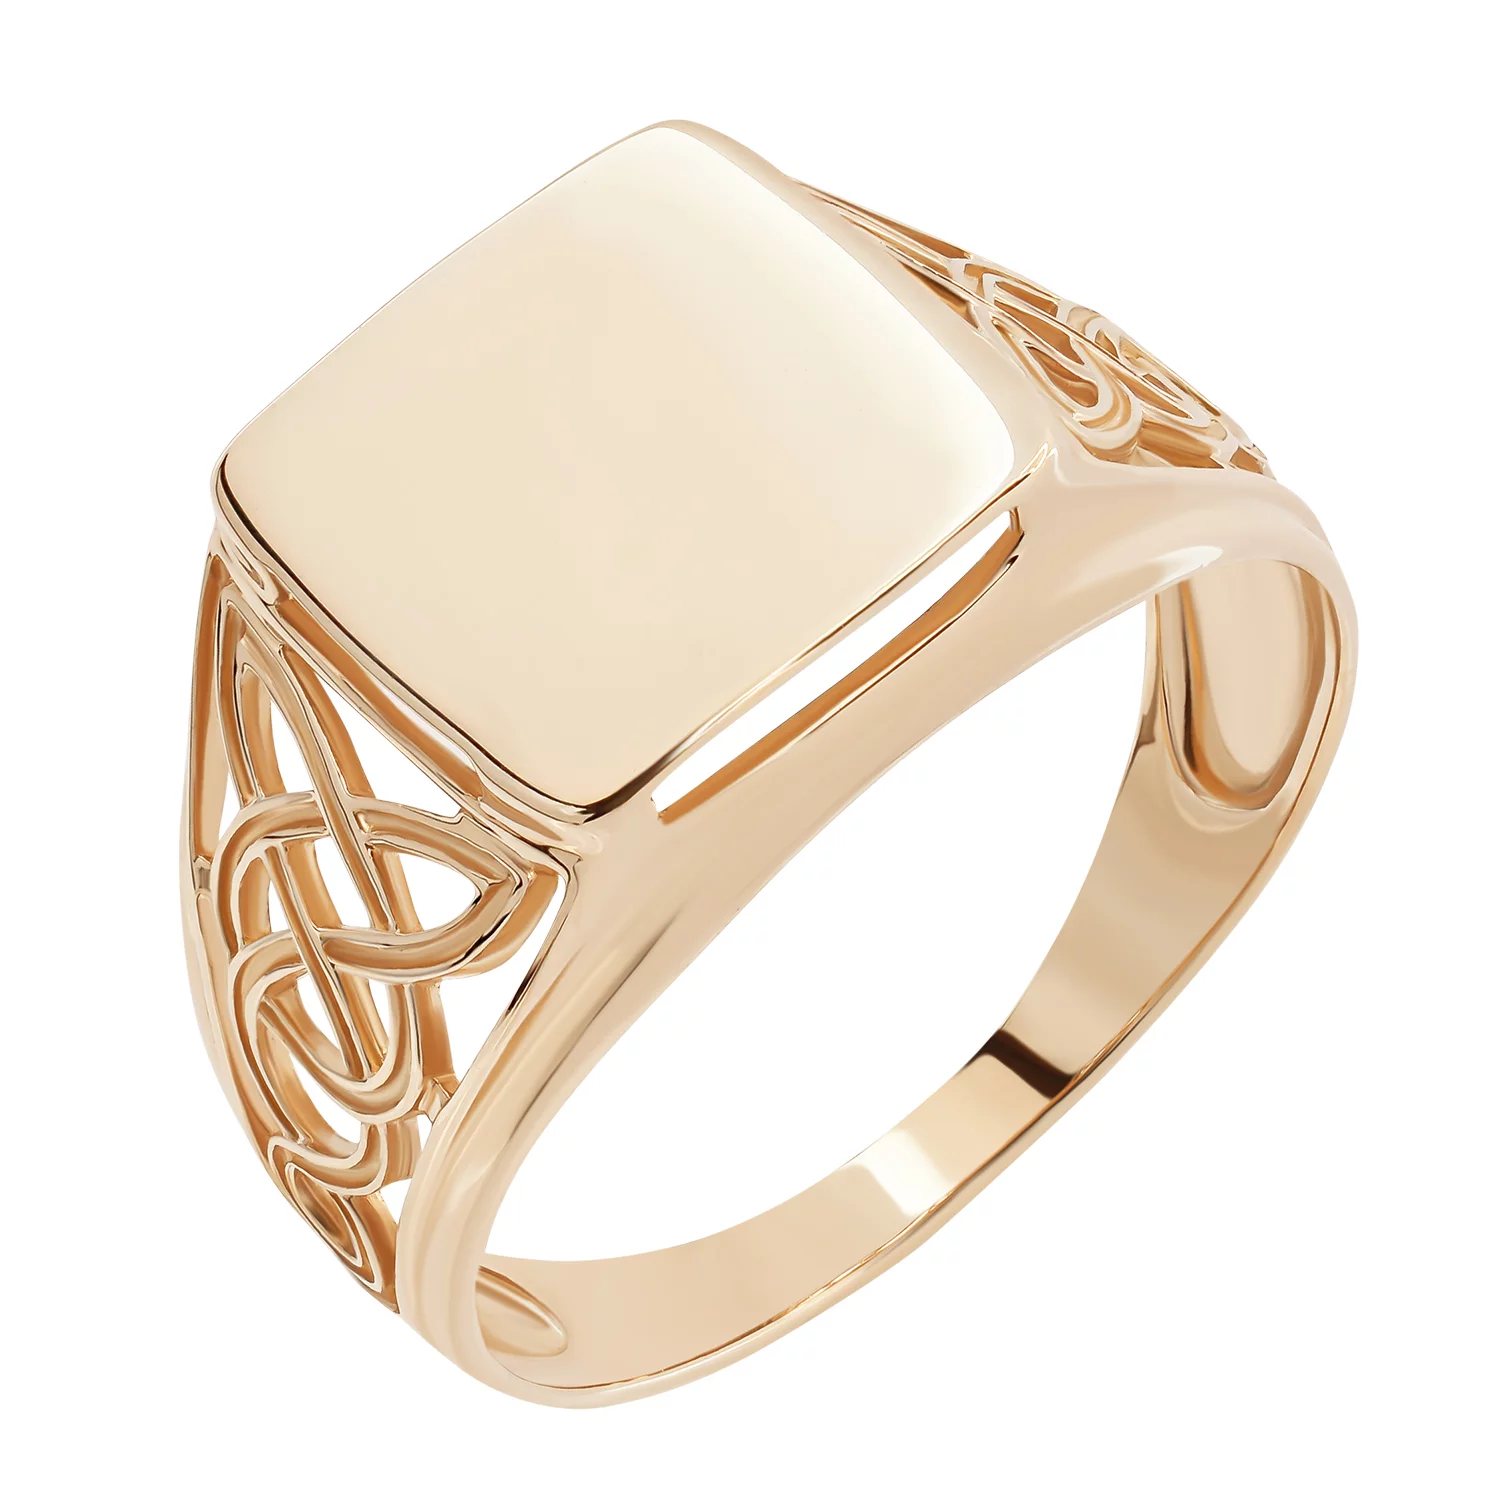 Перстень из красного золота Переплетение. Артикул 510030: цена, отзывы, фото – купить в интернет-магазине AURUM